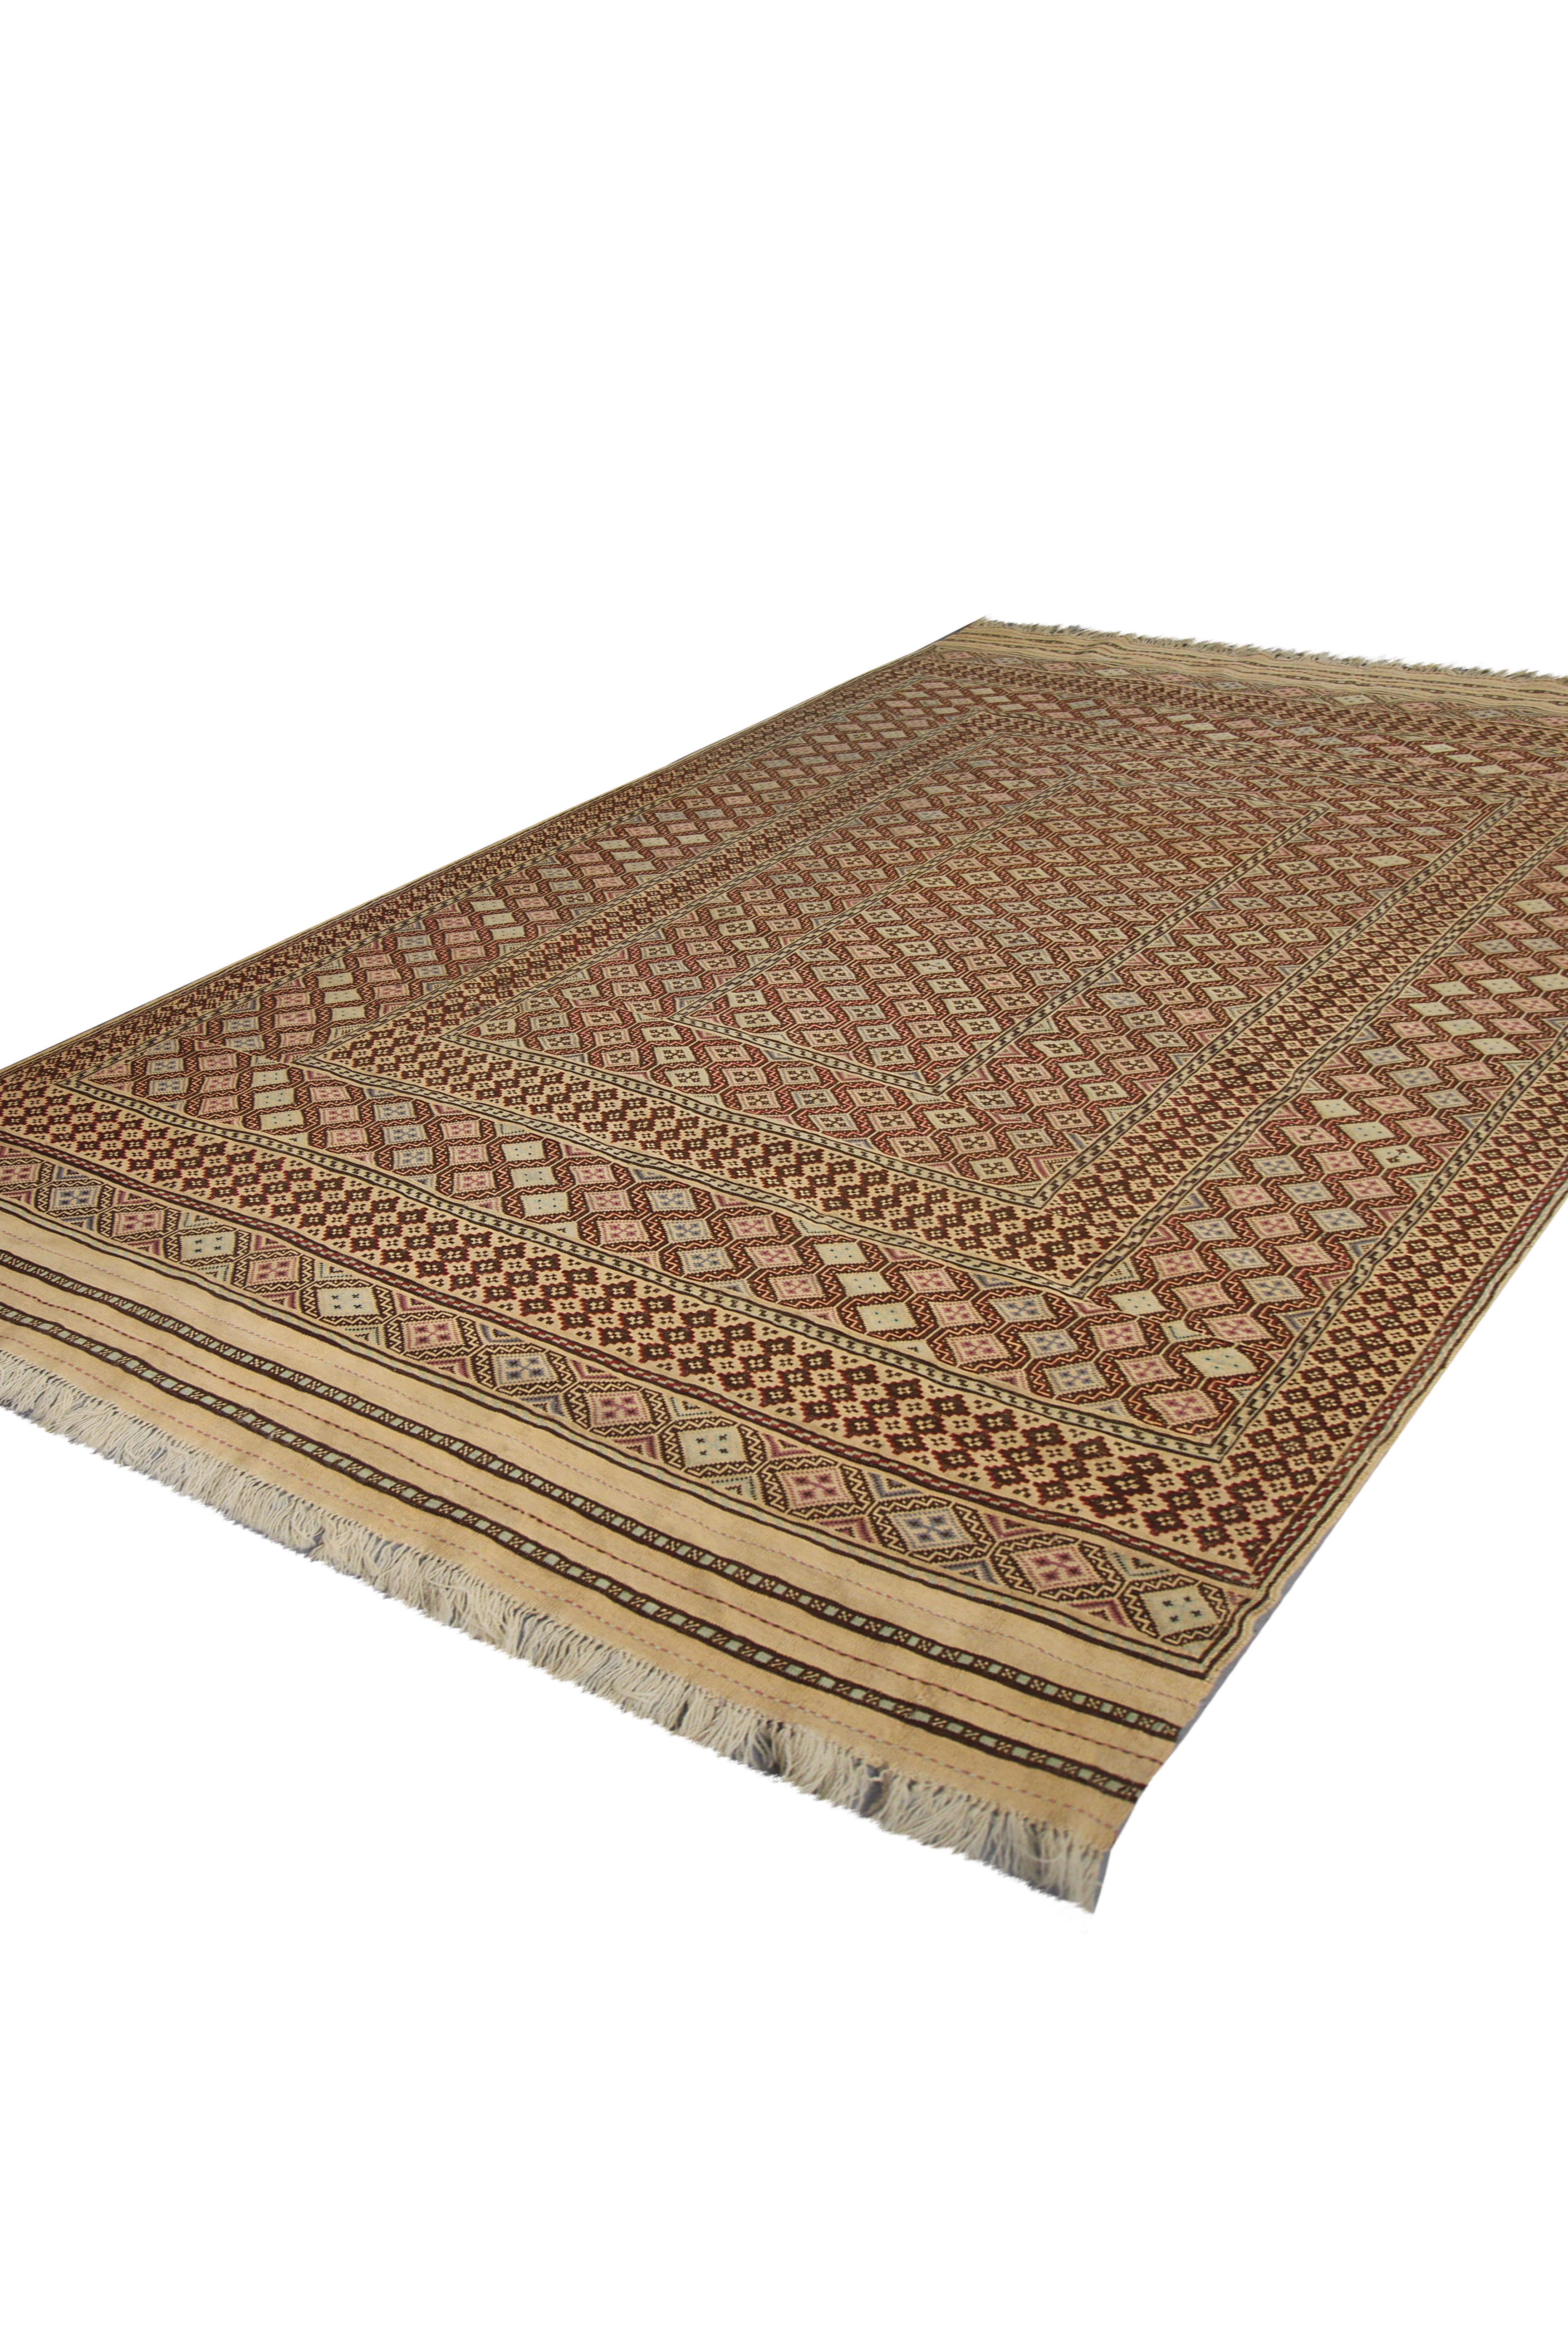 Afghan Ancien tapis brun Sumak tissé à la main, tissé à plat, Tapis oriental ancien en vente